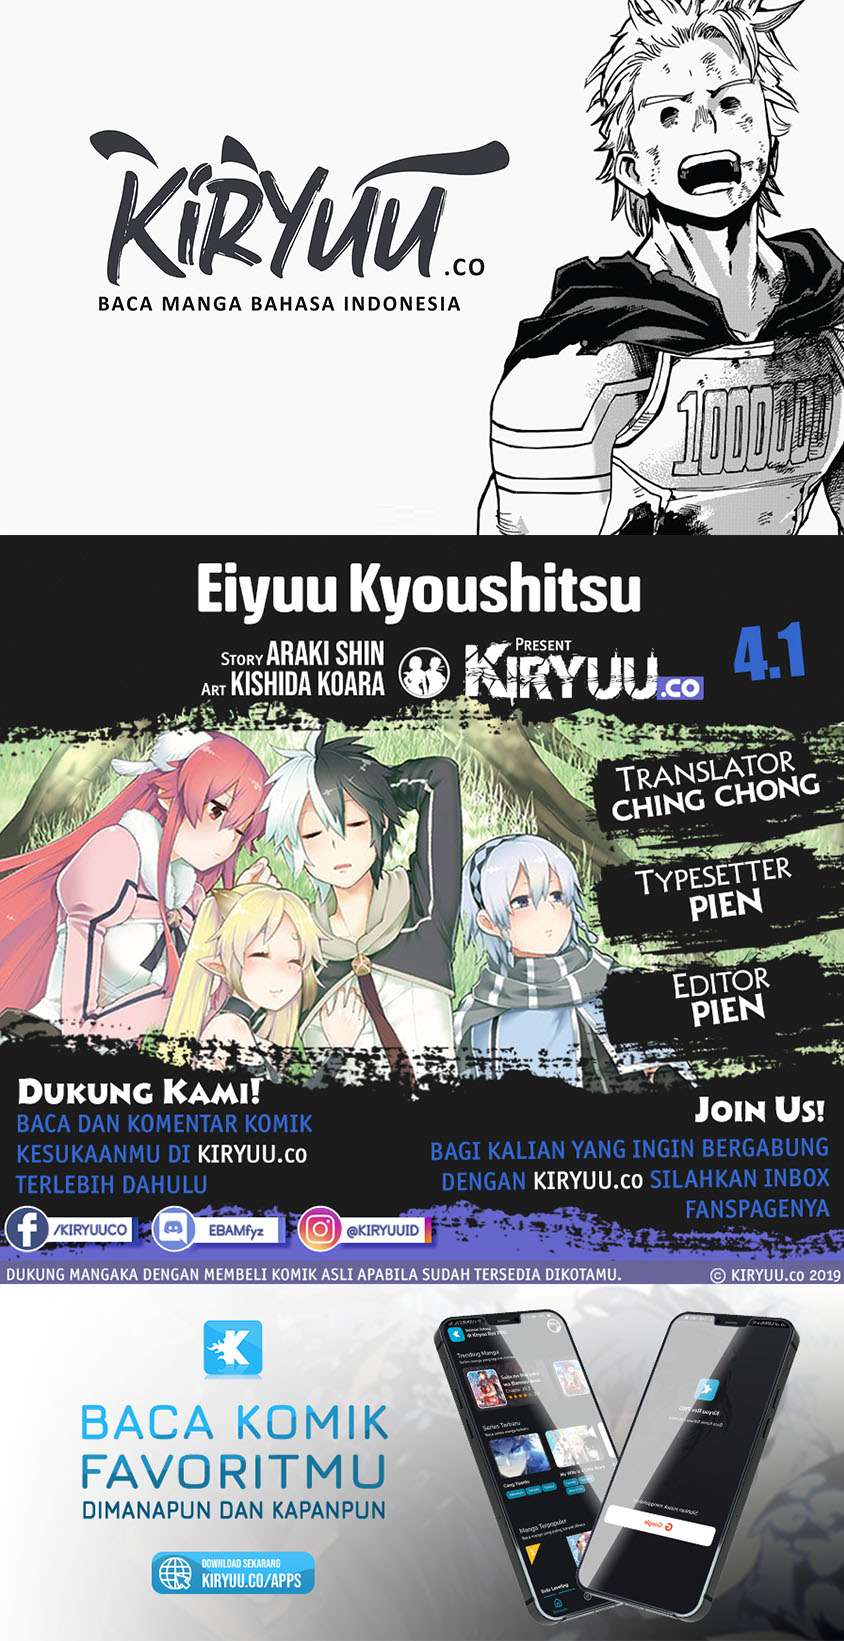 Baca Komik Eiyuu Kyoushitsu Chapter 4.1 Gambar 1